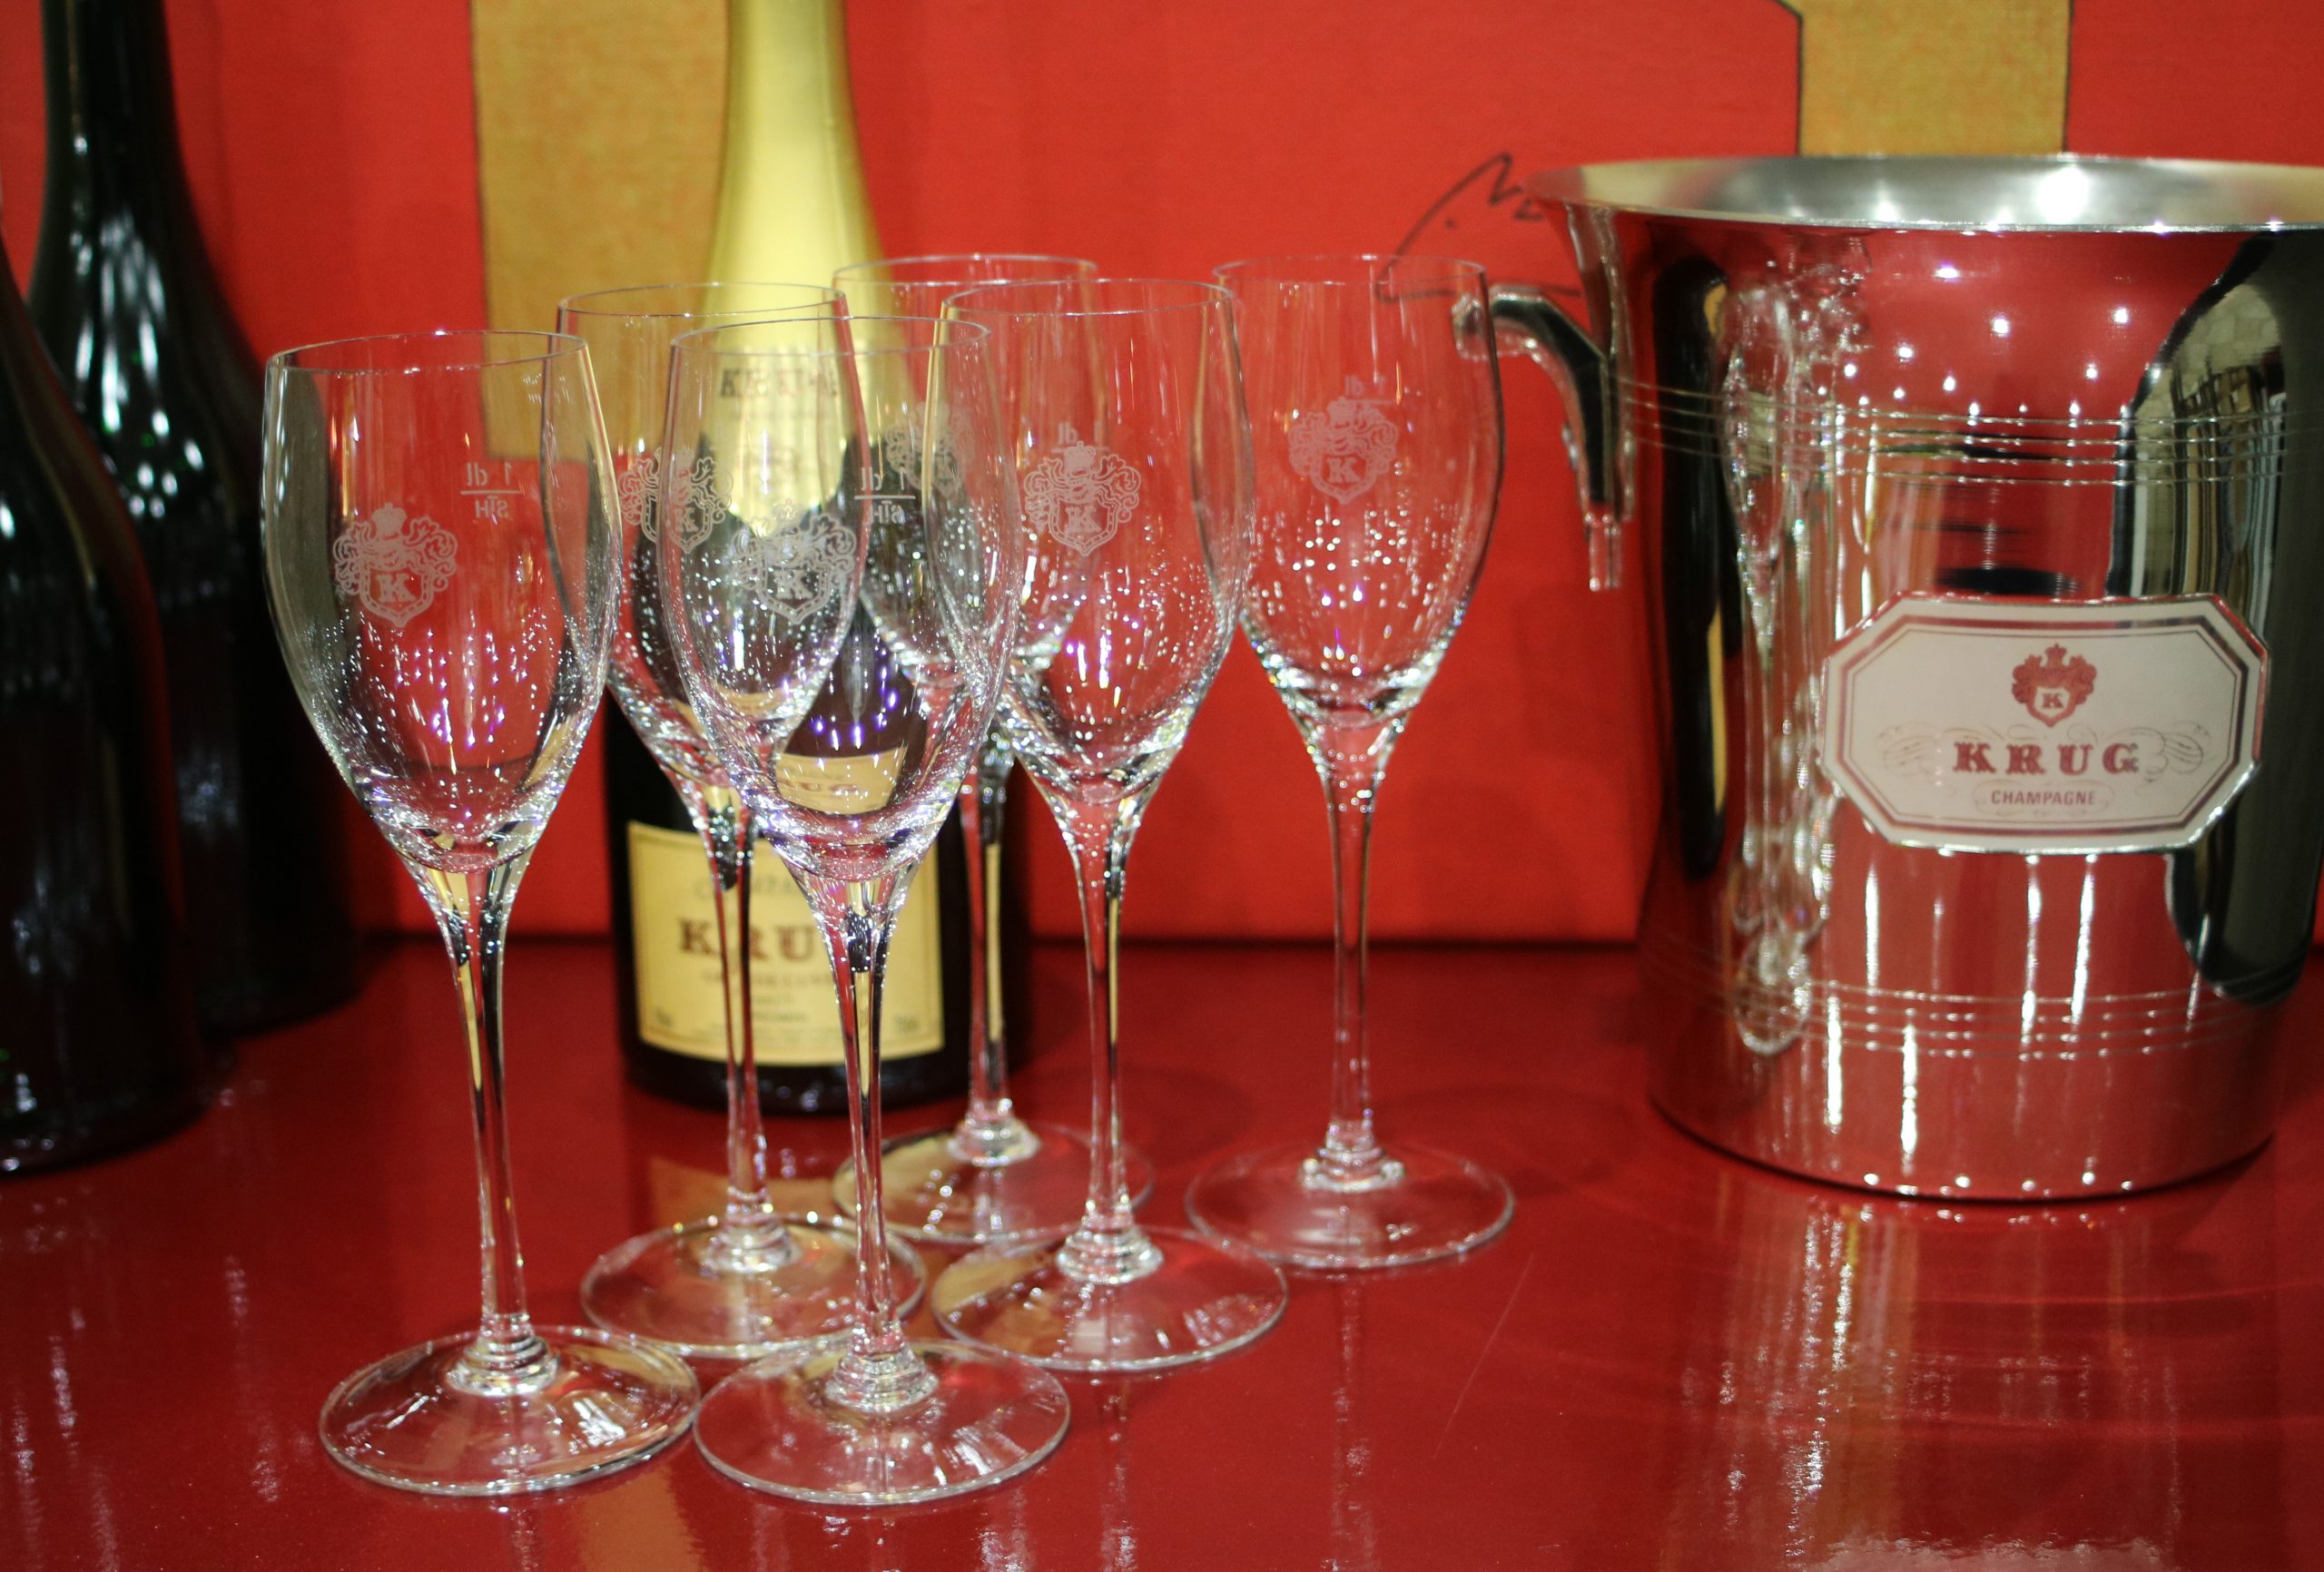 ELADVA – KRUG champagne 12 darabos kristálypohár készlet eredeti díszdobozában – 142.500.-Ft